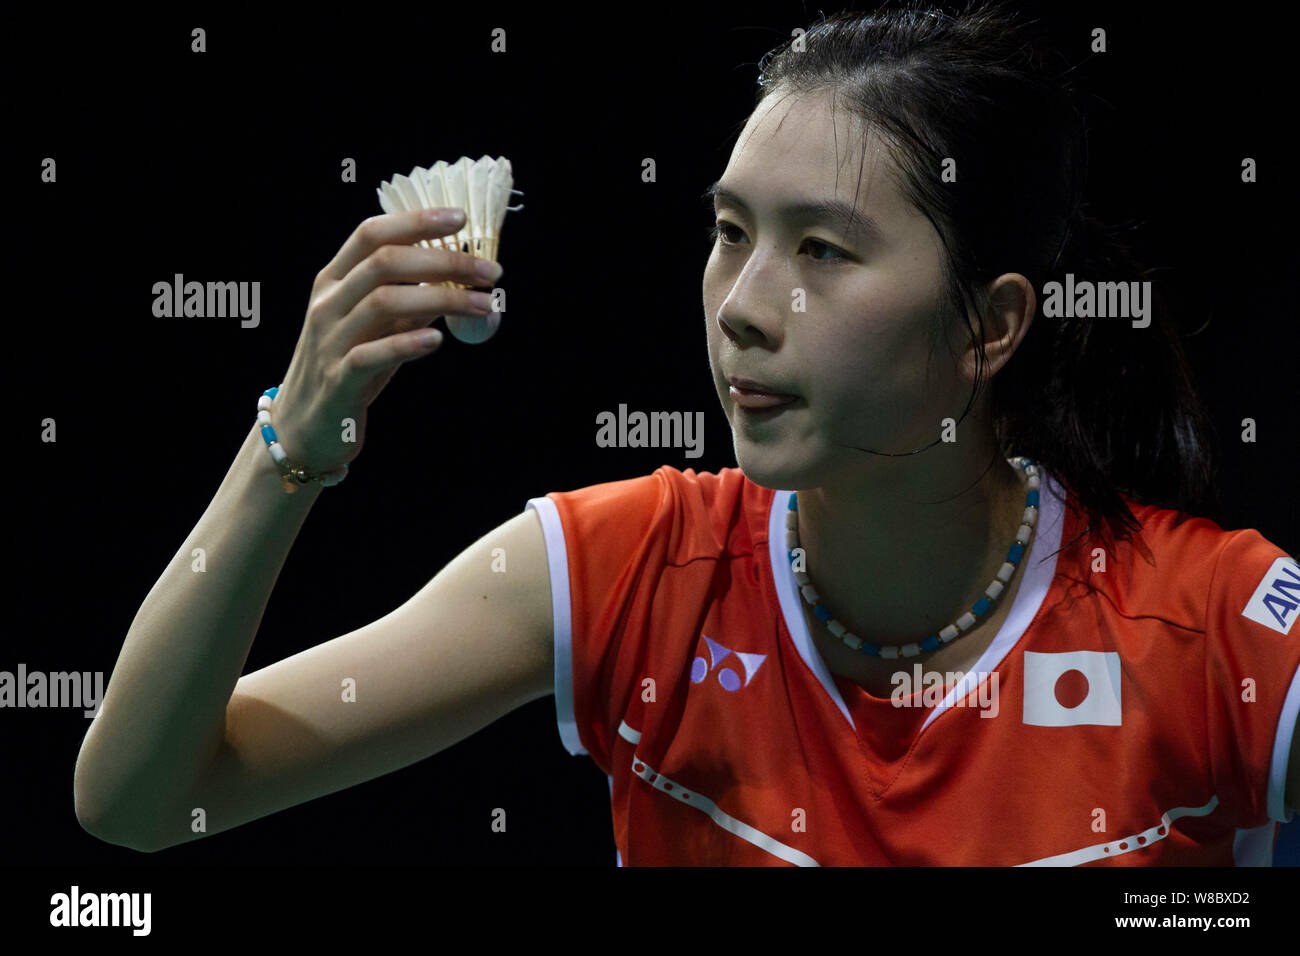 Aya Ohori Japans serviert gegen Zhang Beiwen der Vereinigten Staaten in ihren Frauen Singles match während der OUE Singapore Open 2016 Badminton Tourna Stockfoto